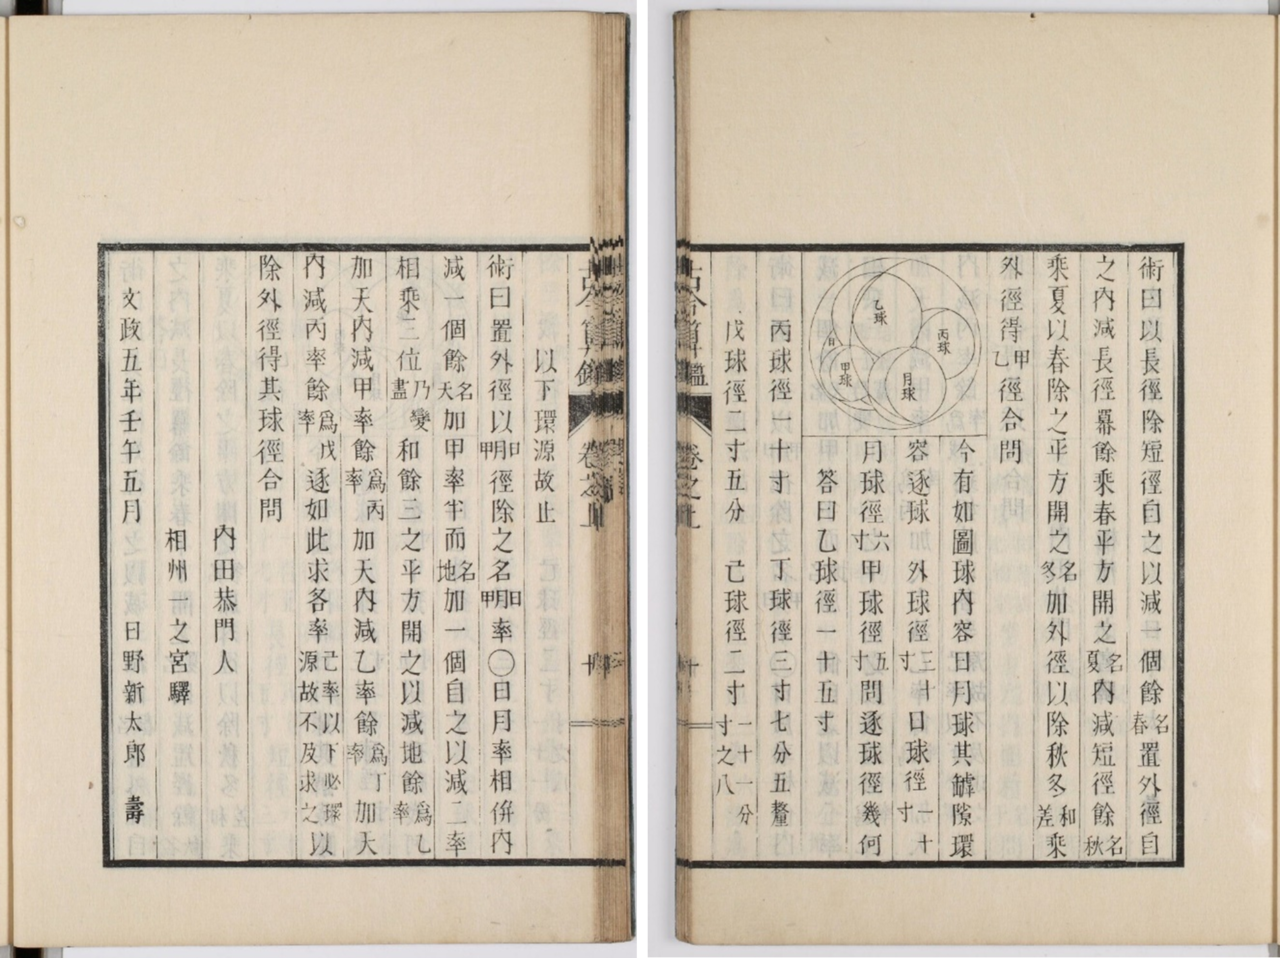 Страницы «Кокон санкан» в цифровом архиве библиотеки математического отдела Отделения естественнонаучных исследований Киотского университета